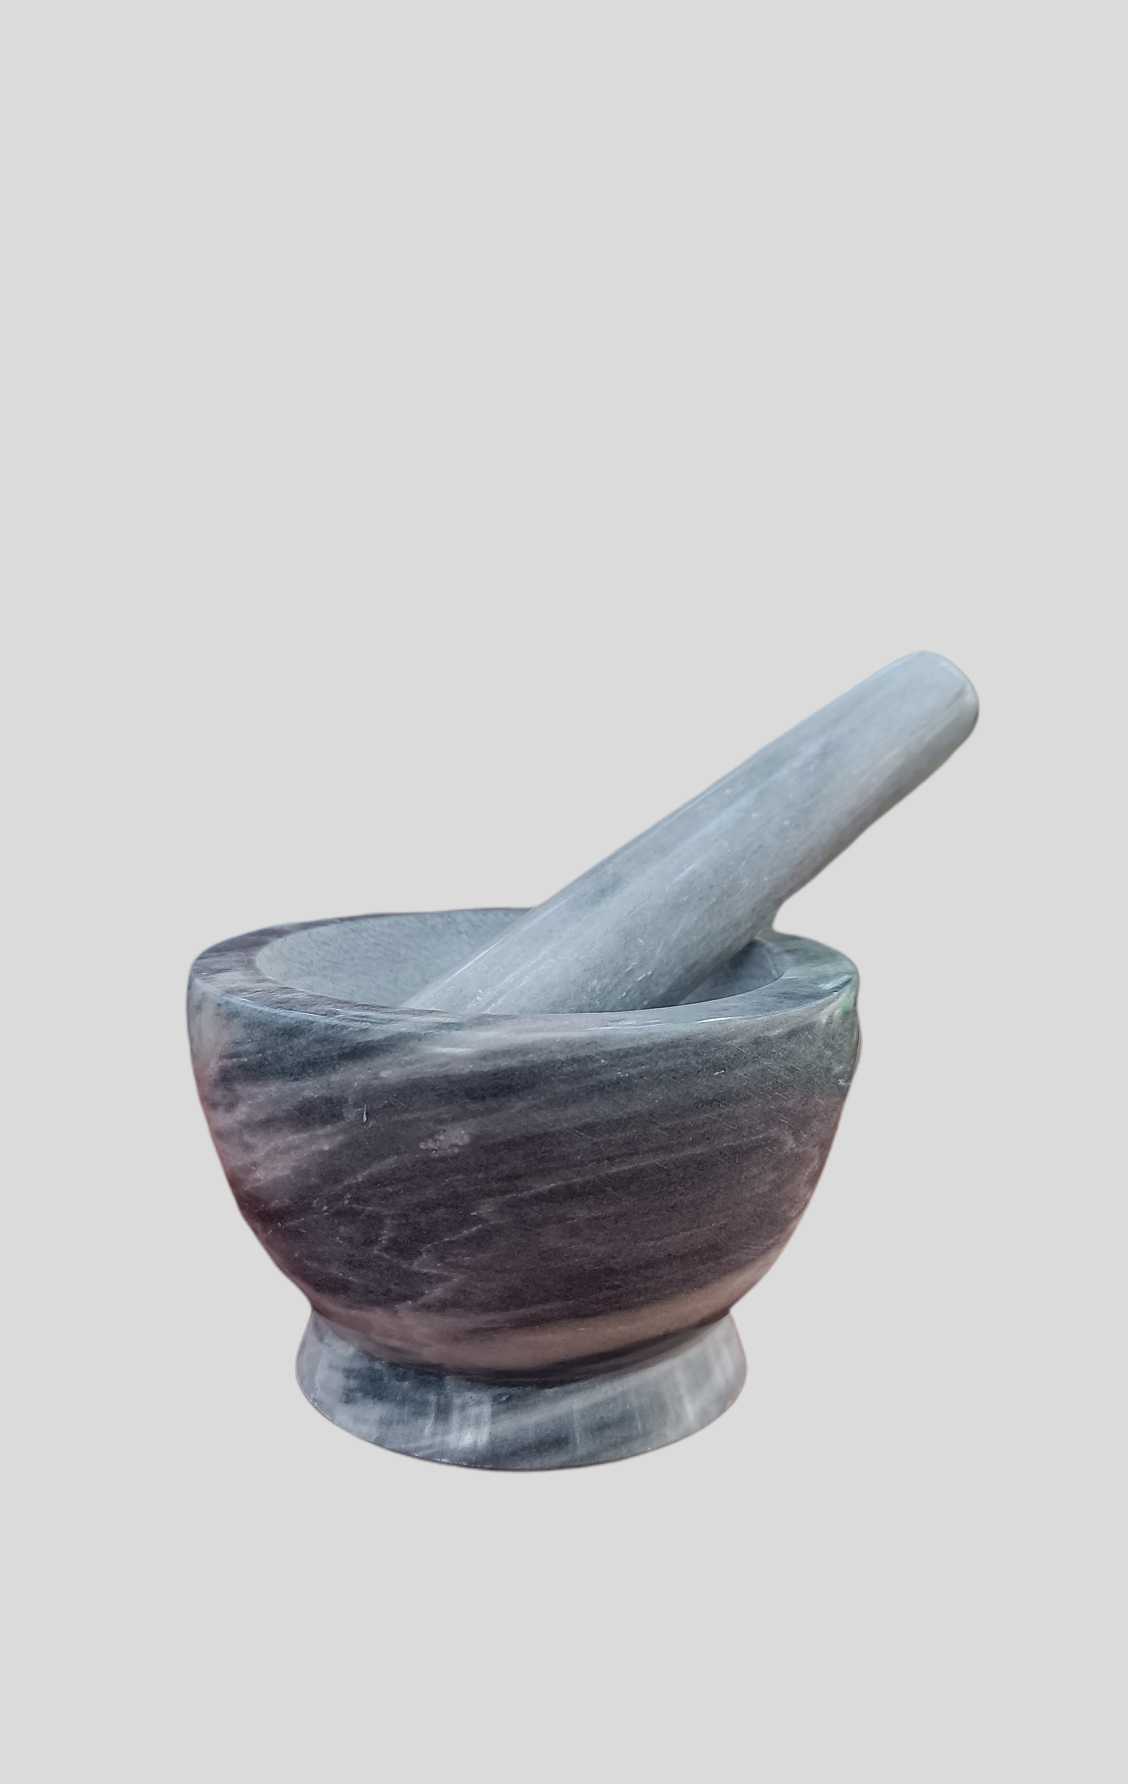 Sagler mortar and pestle set Marble Grey 4.5 diameter – sagler